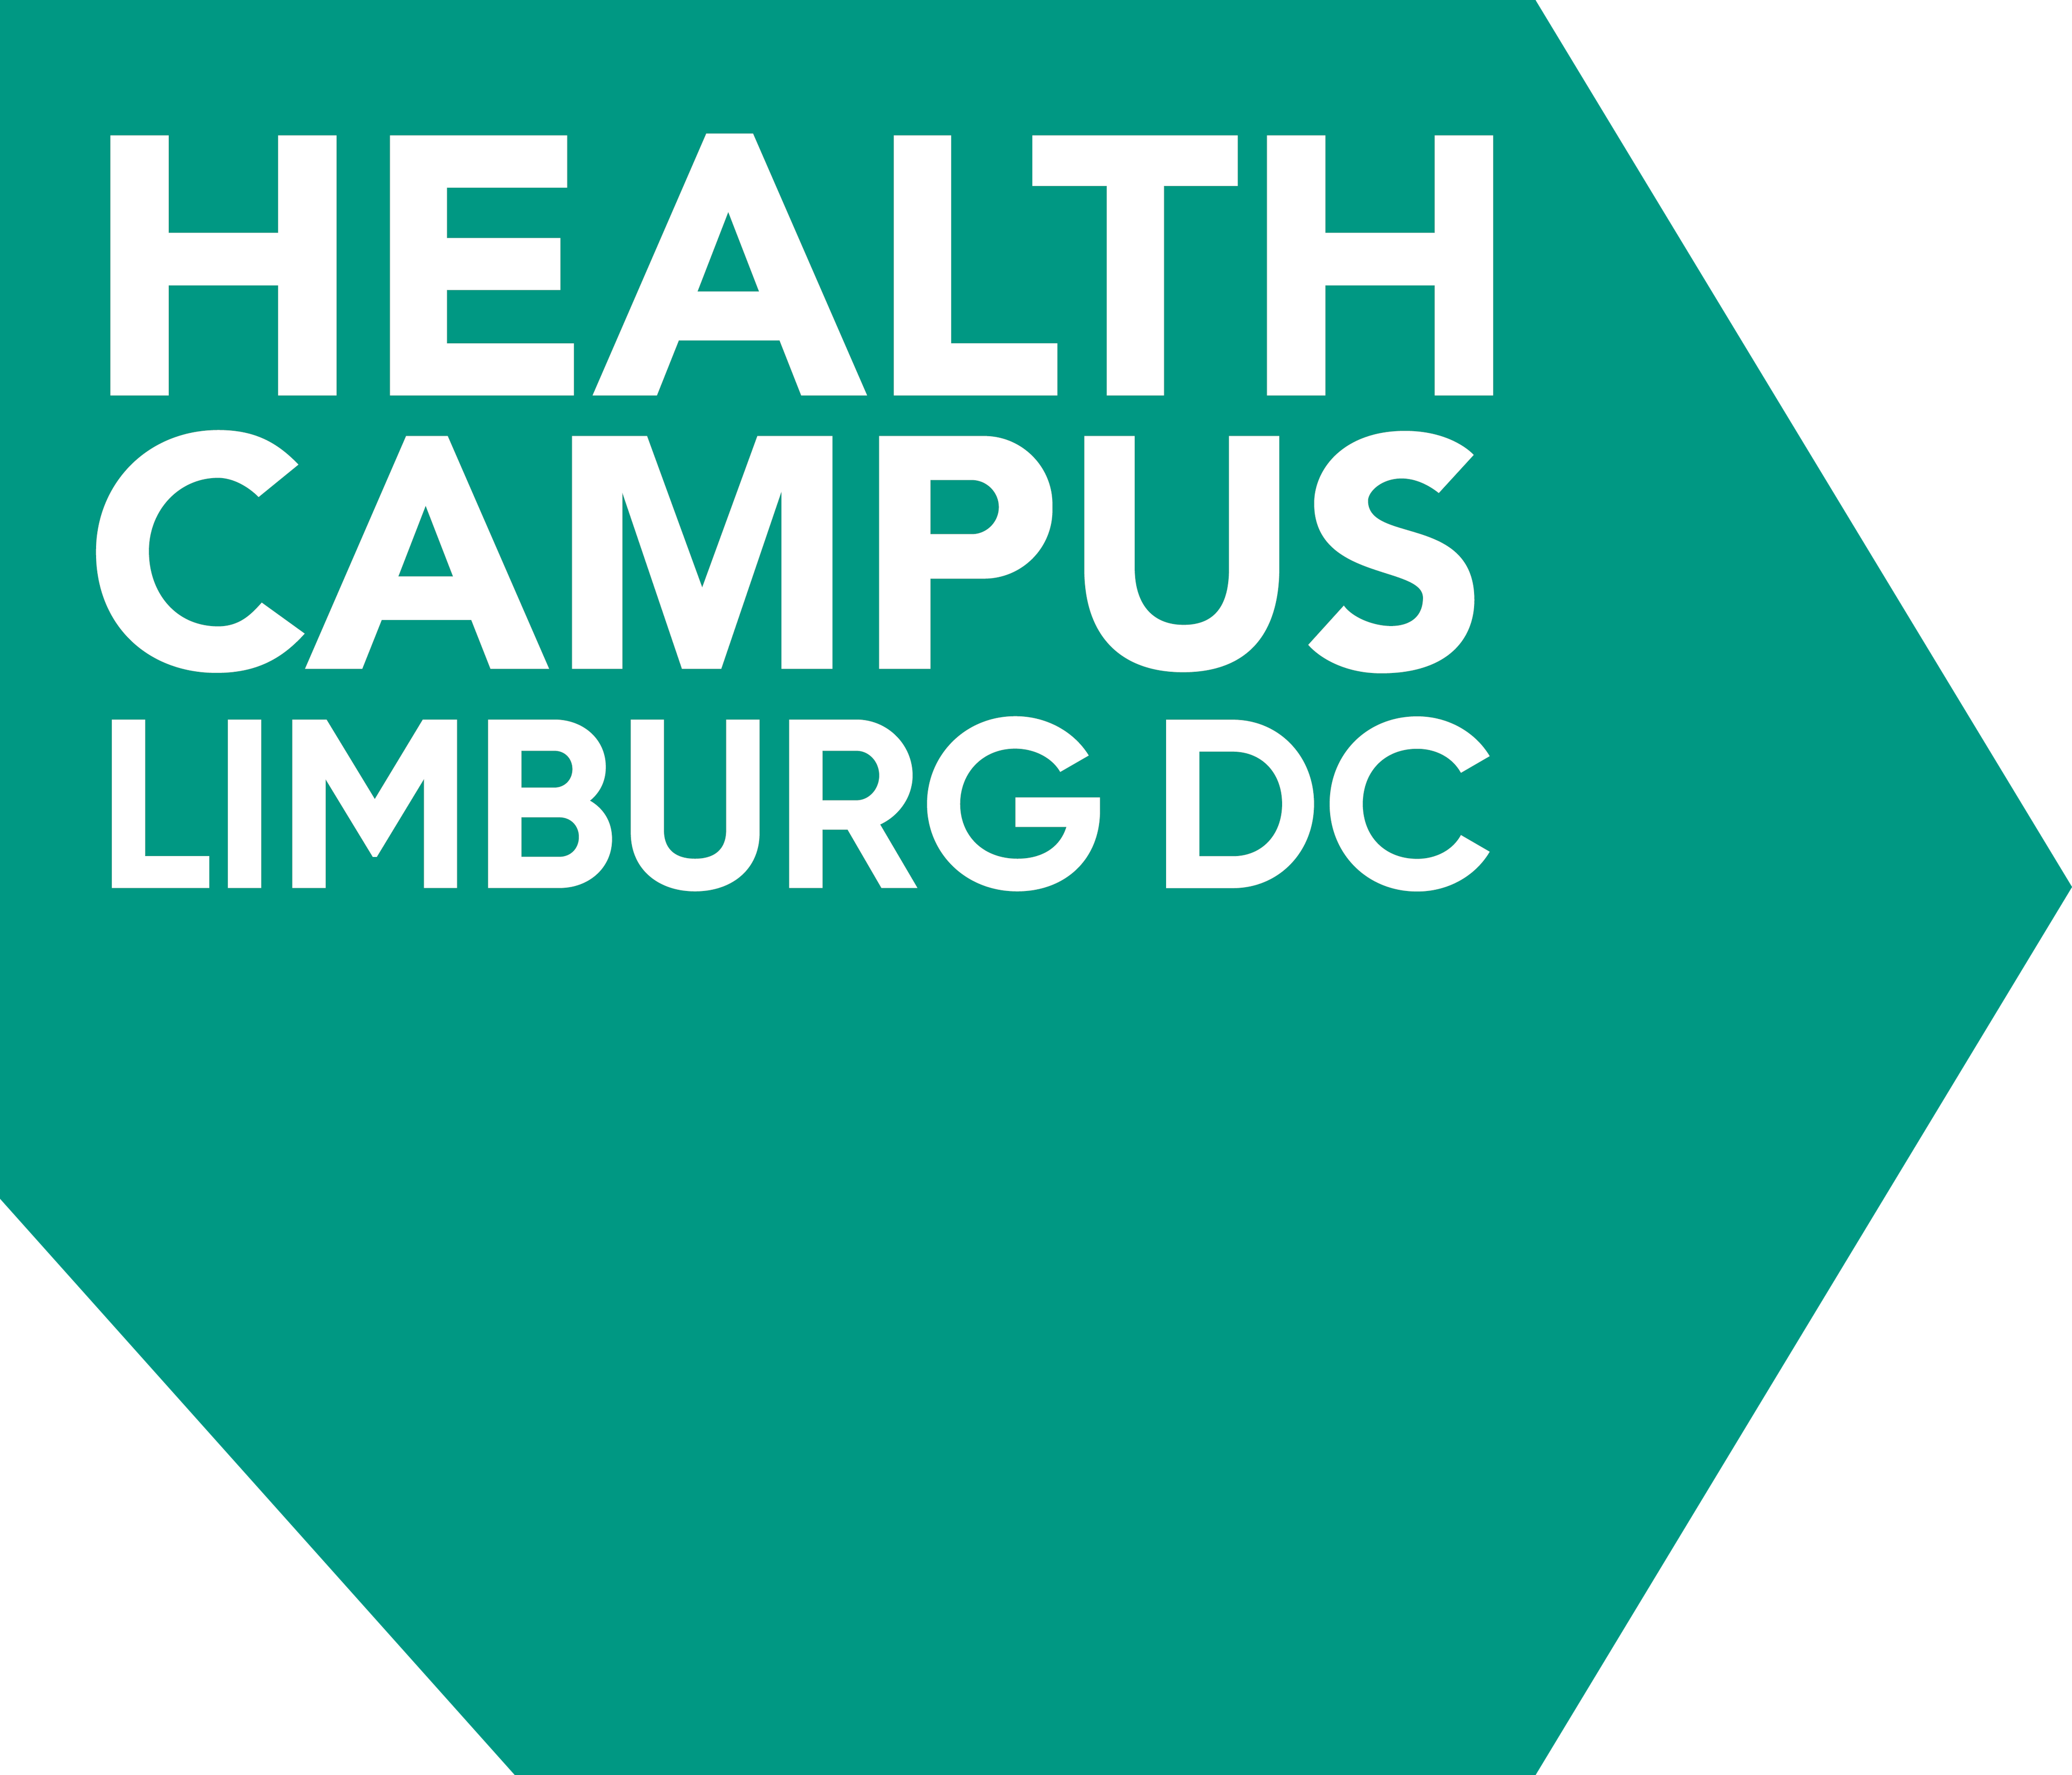 Health Campus Limburg